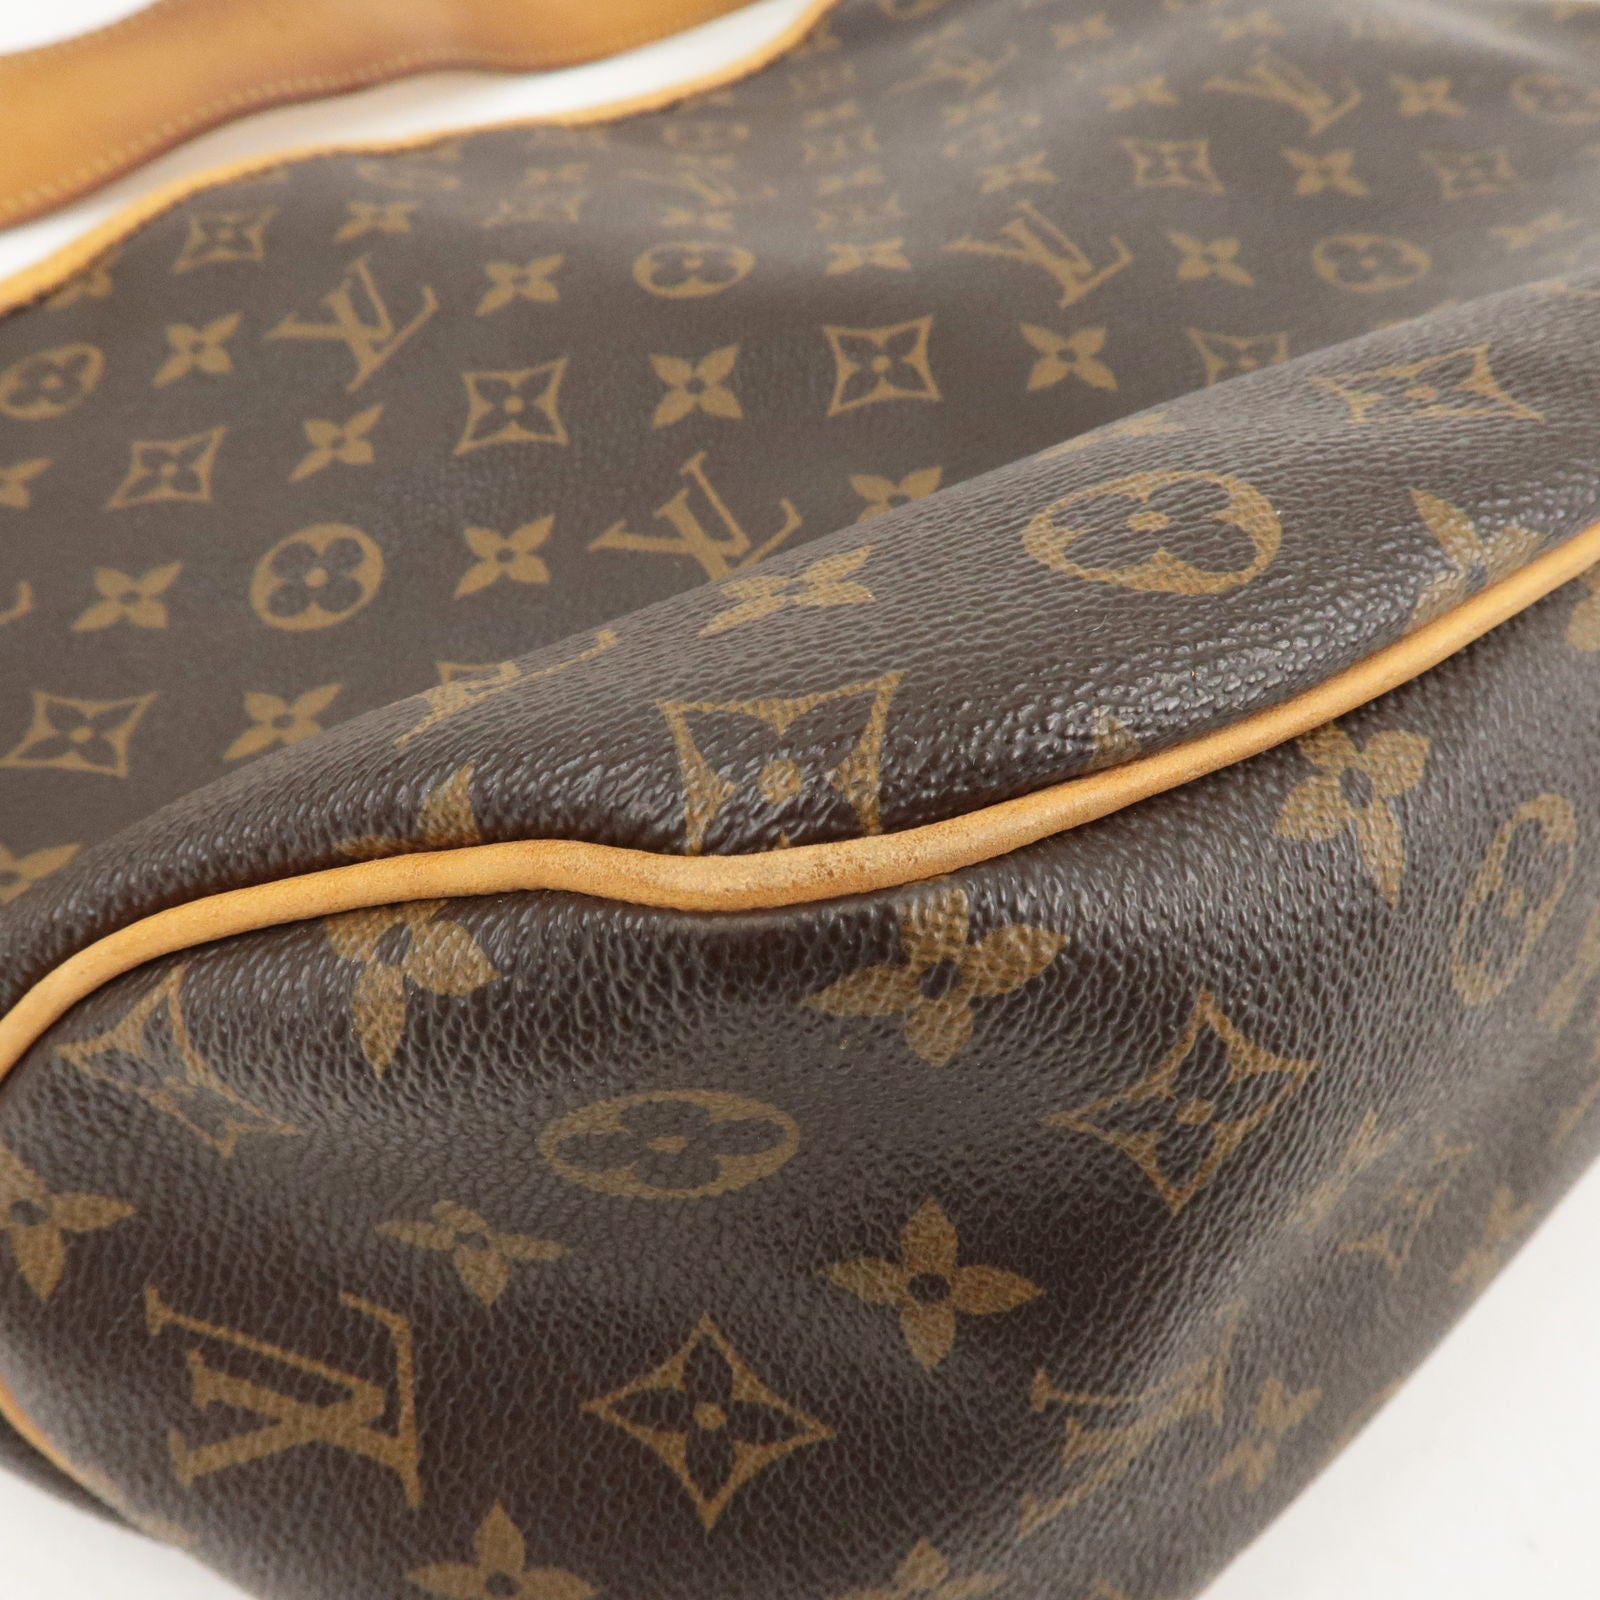 Louis Vuitton 2002 Pre-owned Monogram Pochette Cite Shoulder Bag